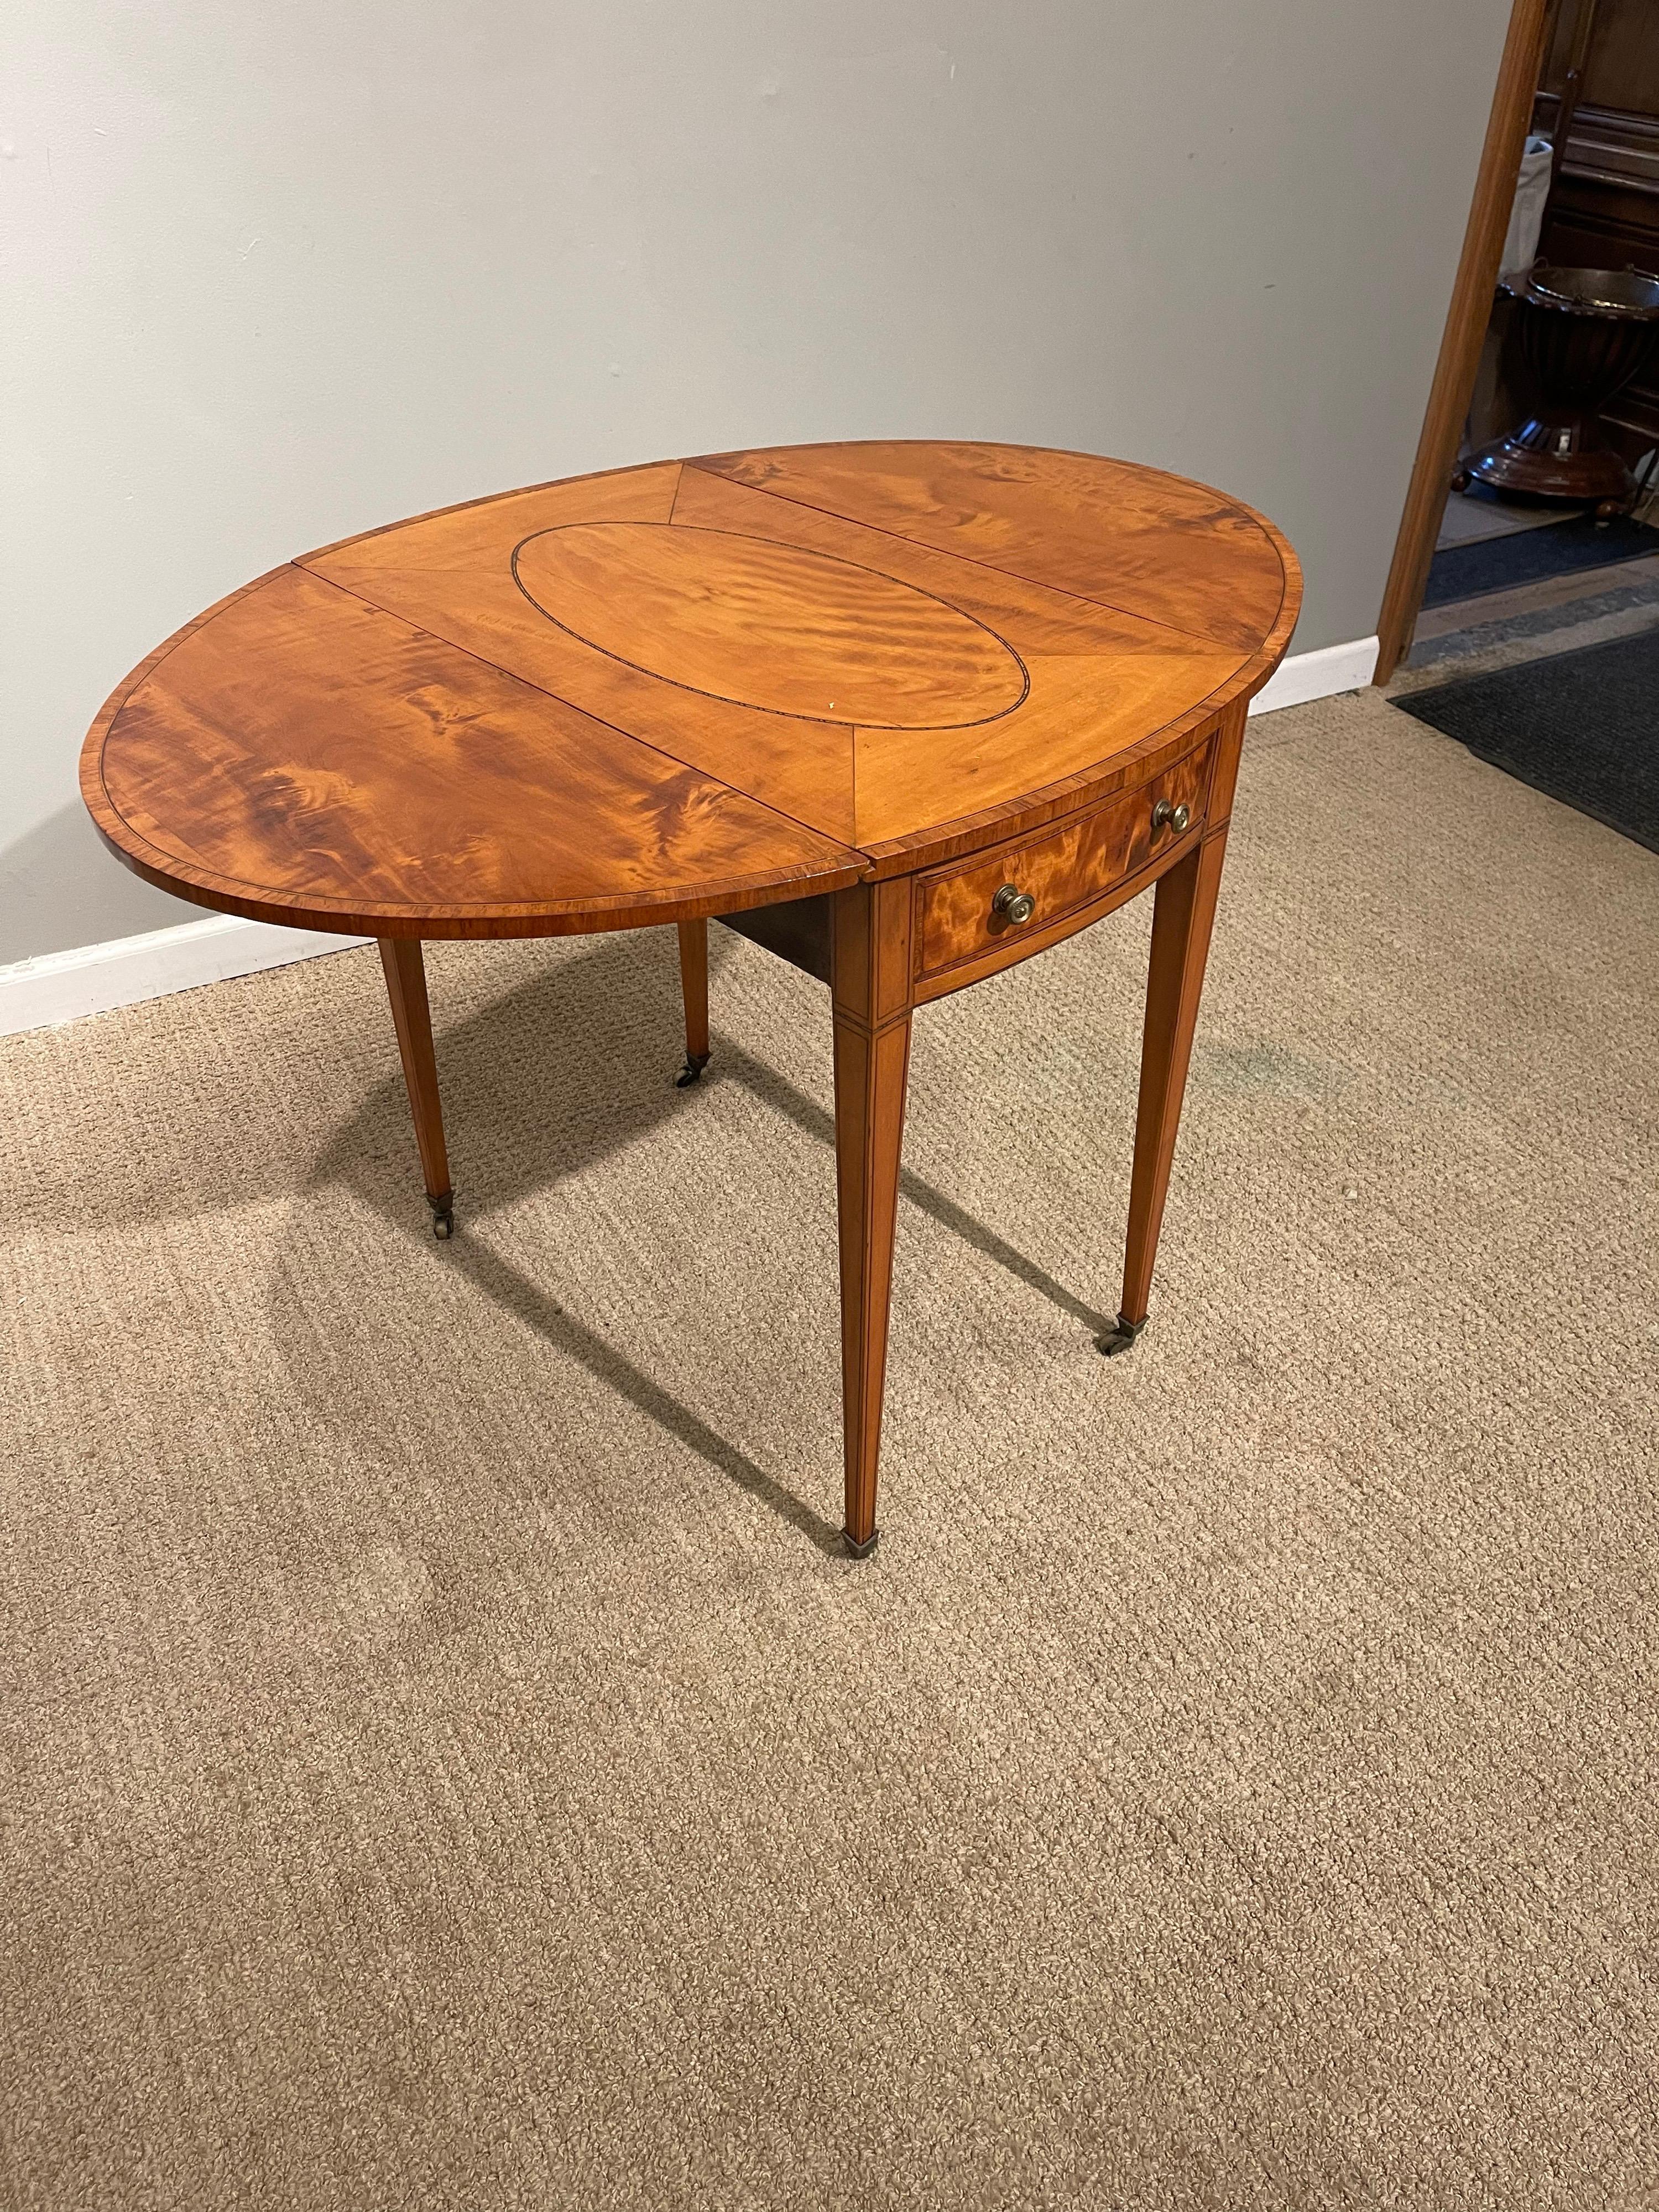 Stark gemaserter ovaler Pembroke-Tisch aus Sheraton-Satinholz
mit einem ovalen Medaillon im oberen Teil, das mit Satinholz umrandet ist &
mit Ebenholzbespannung. Erhoben auf quadratischen, sich verjüngenden Beinen
Messing-Rollen &